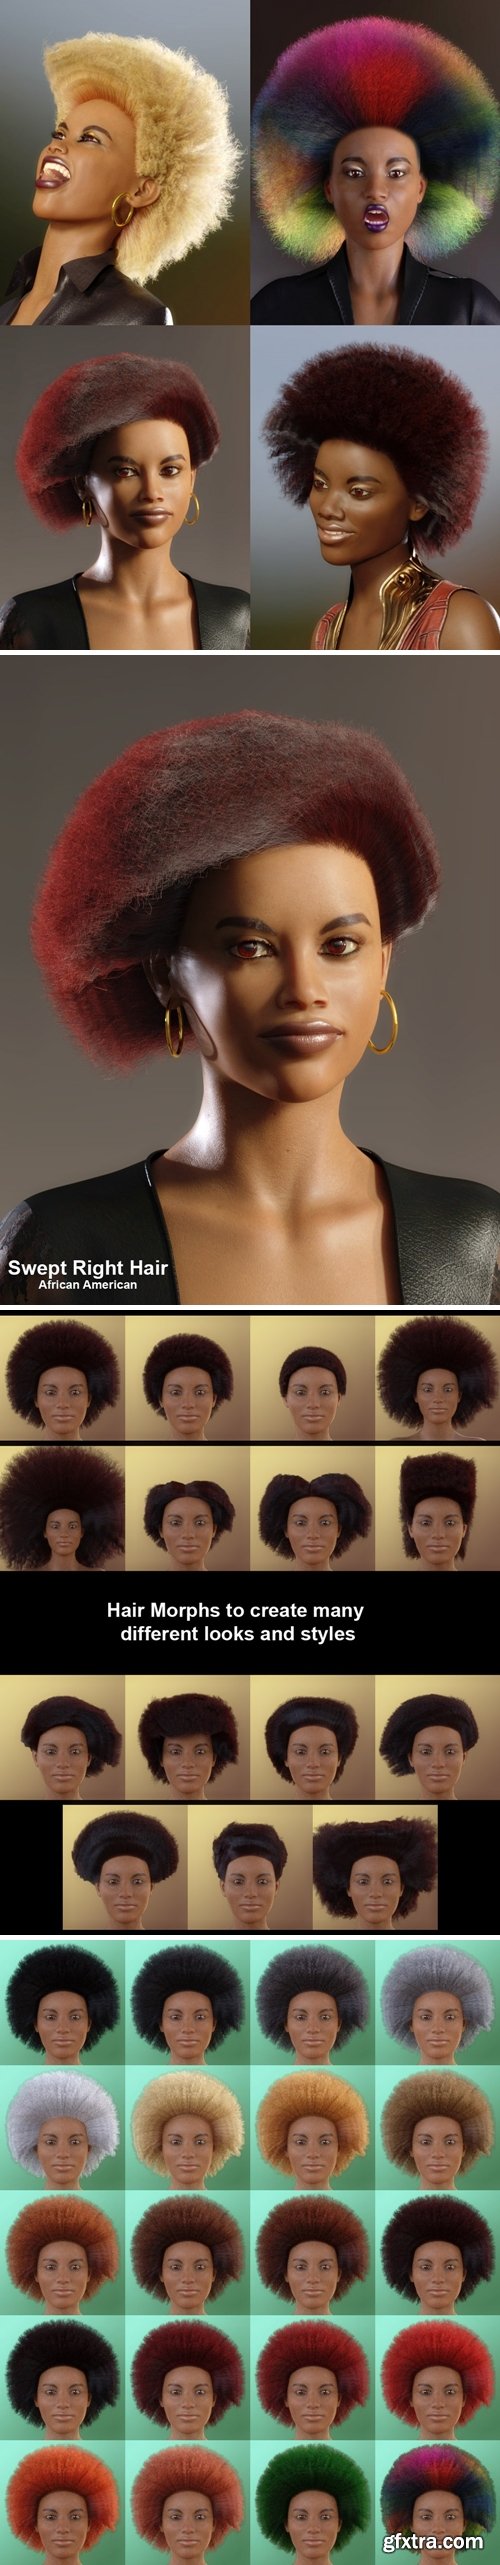 Daz3D - dForce African Hair for Genesis 8 Female